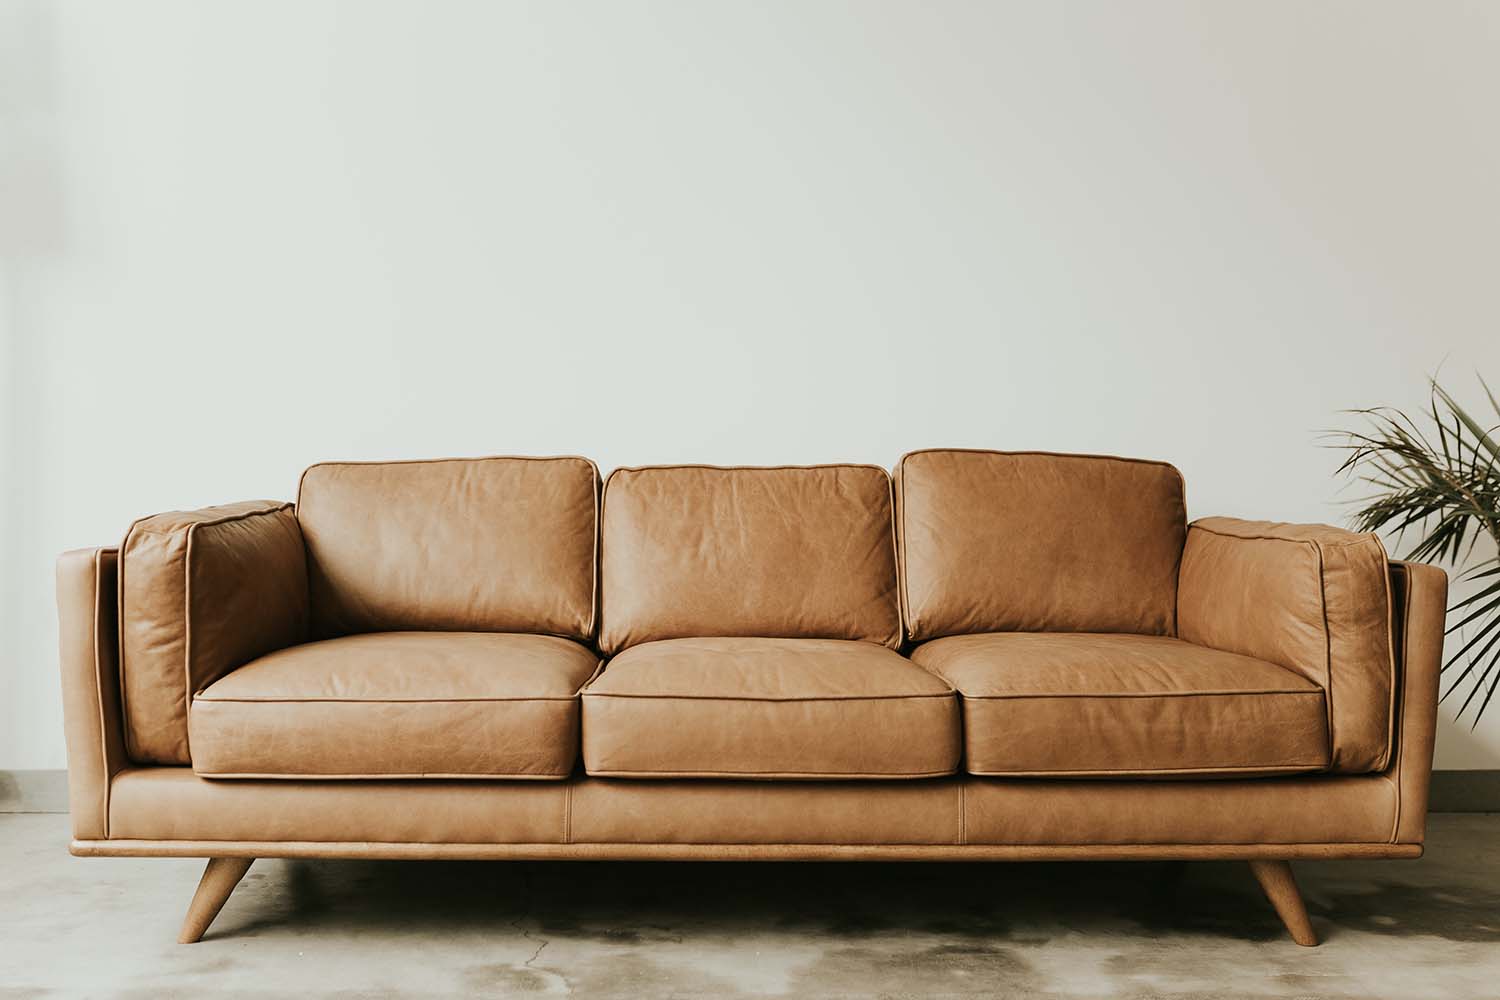 Choosing a Contemporary Sofa